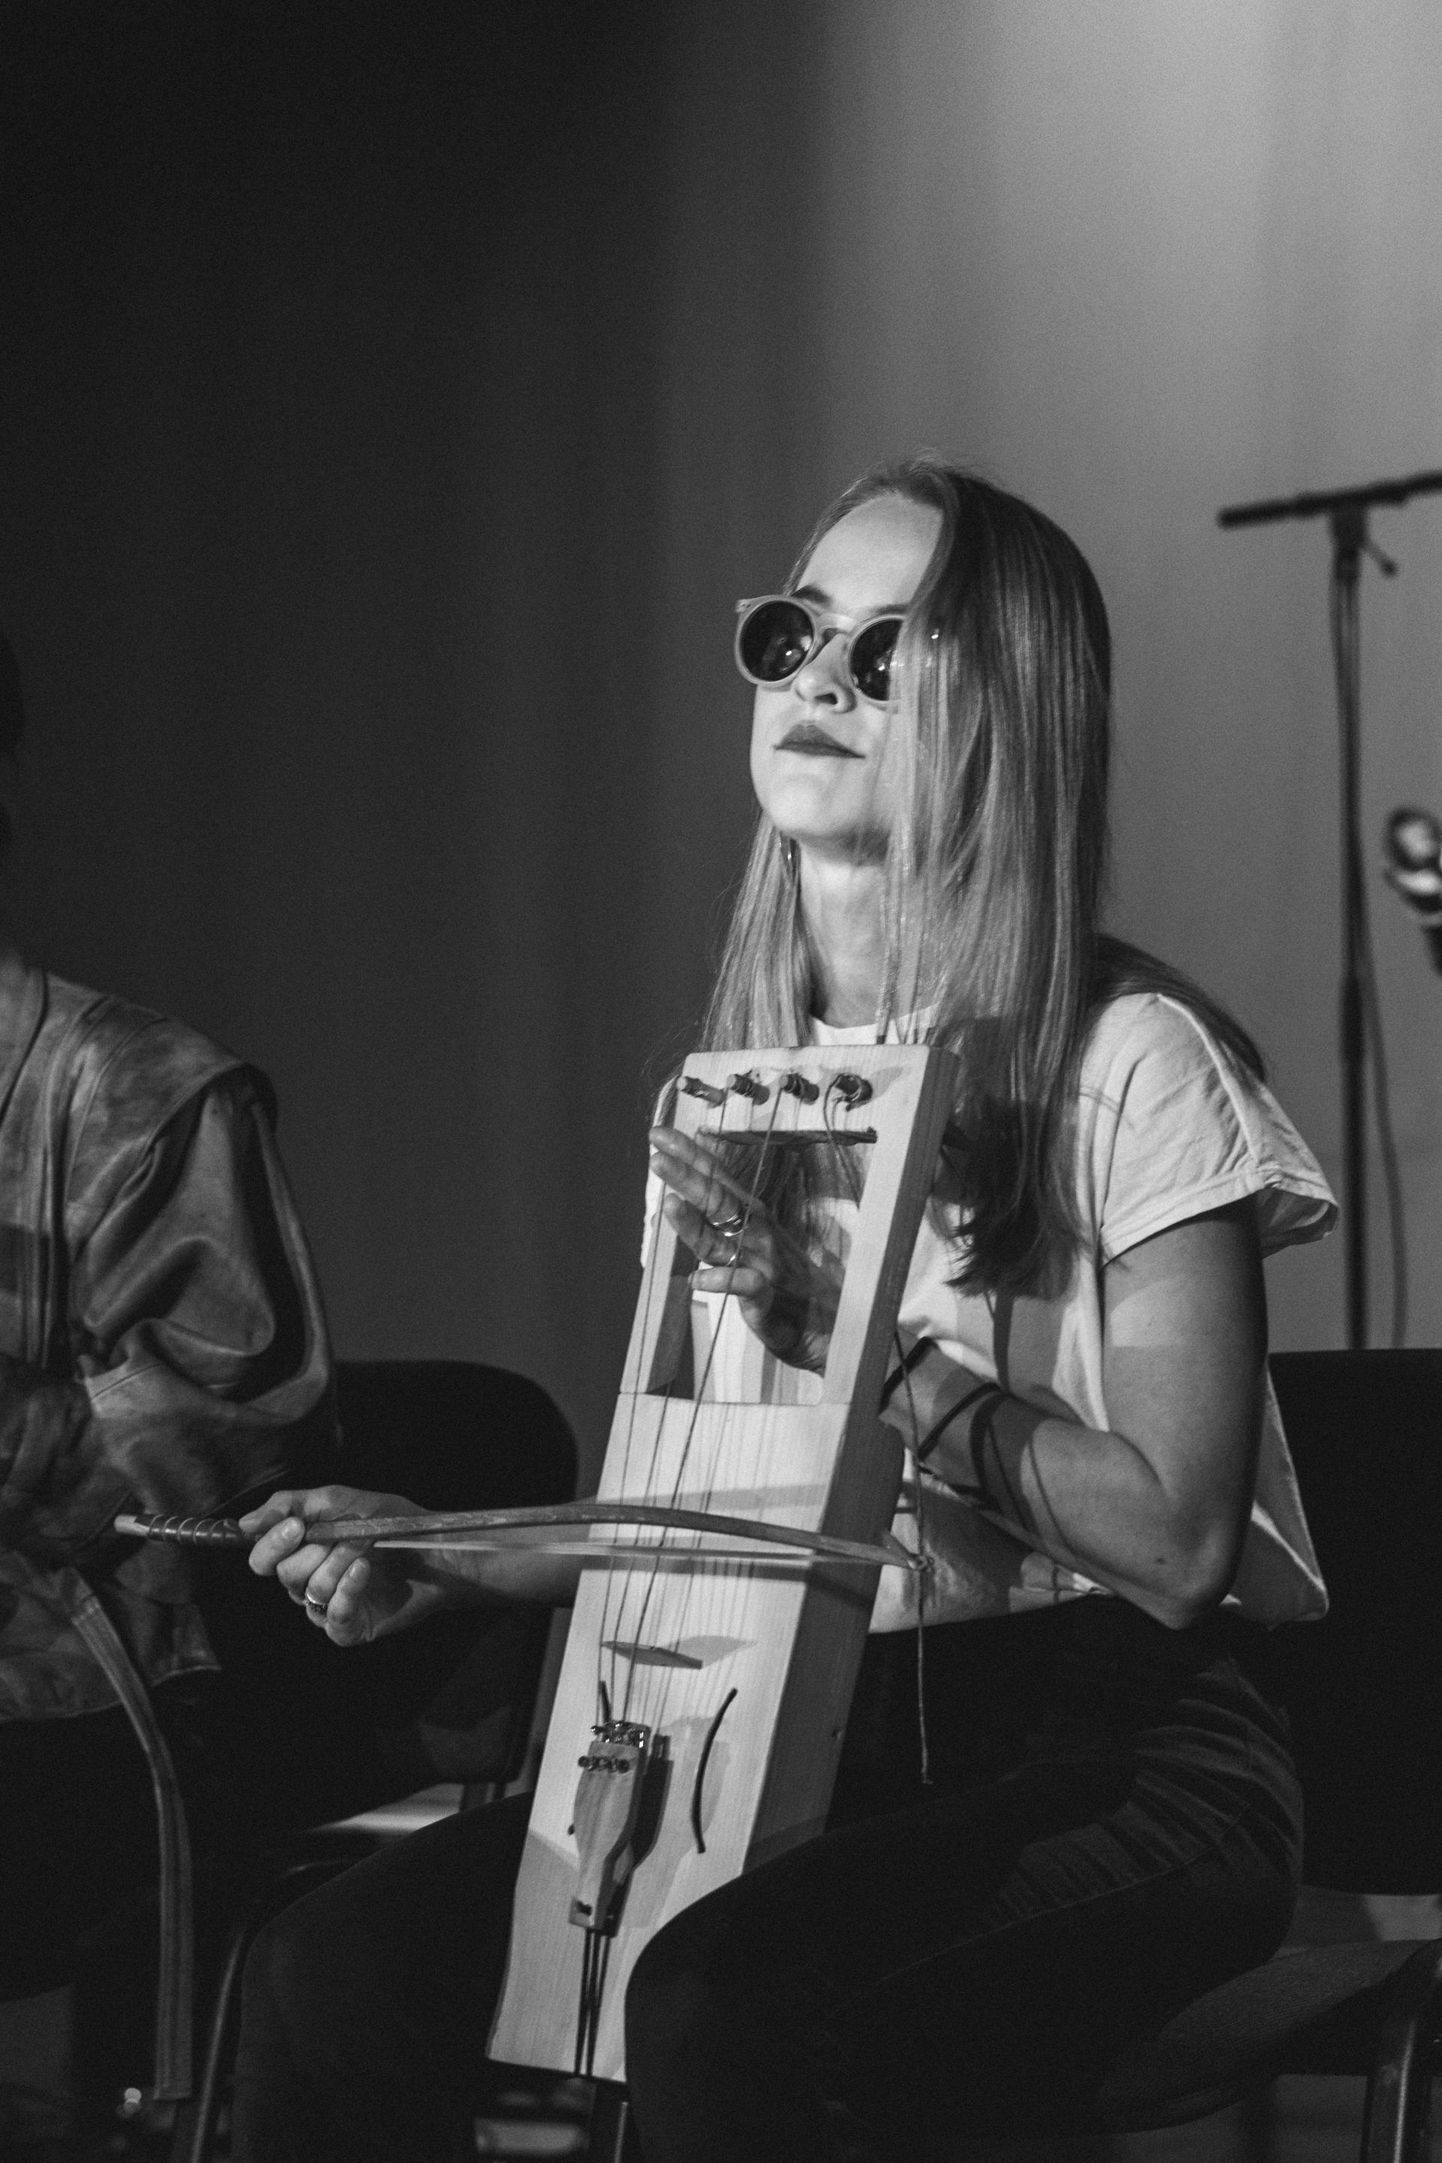 Esimese õppeaasta pärimusmuusika tudeng Regina Mänd astus üles Hiiu kannelde ansamblis, mida juhendas Janne Suits.